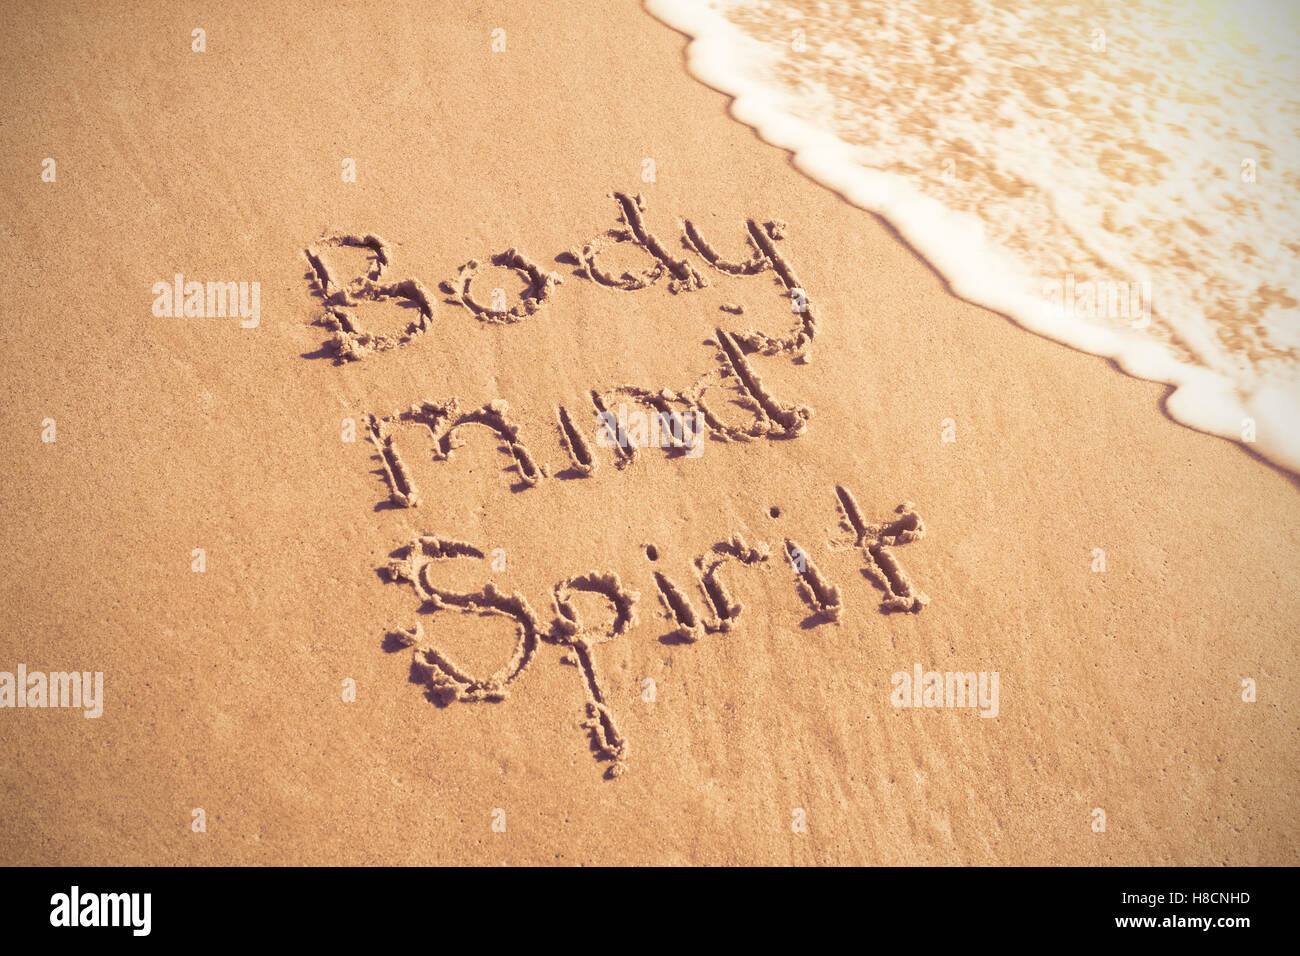 Body mind spirit texte écrit sur le sable avec surf Banque D'Images